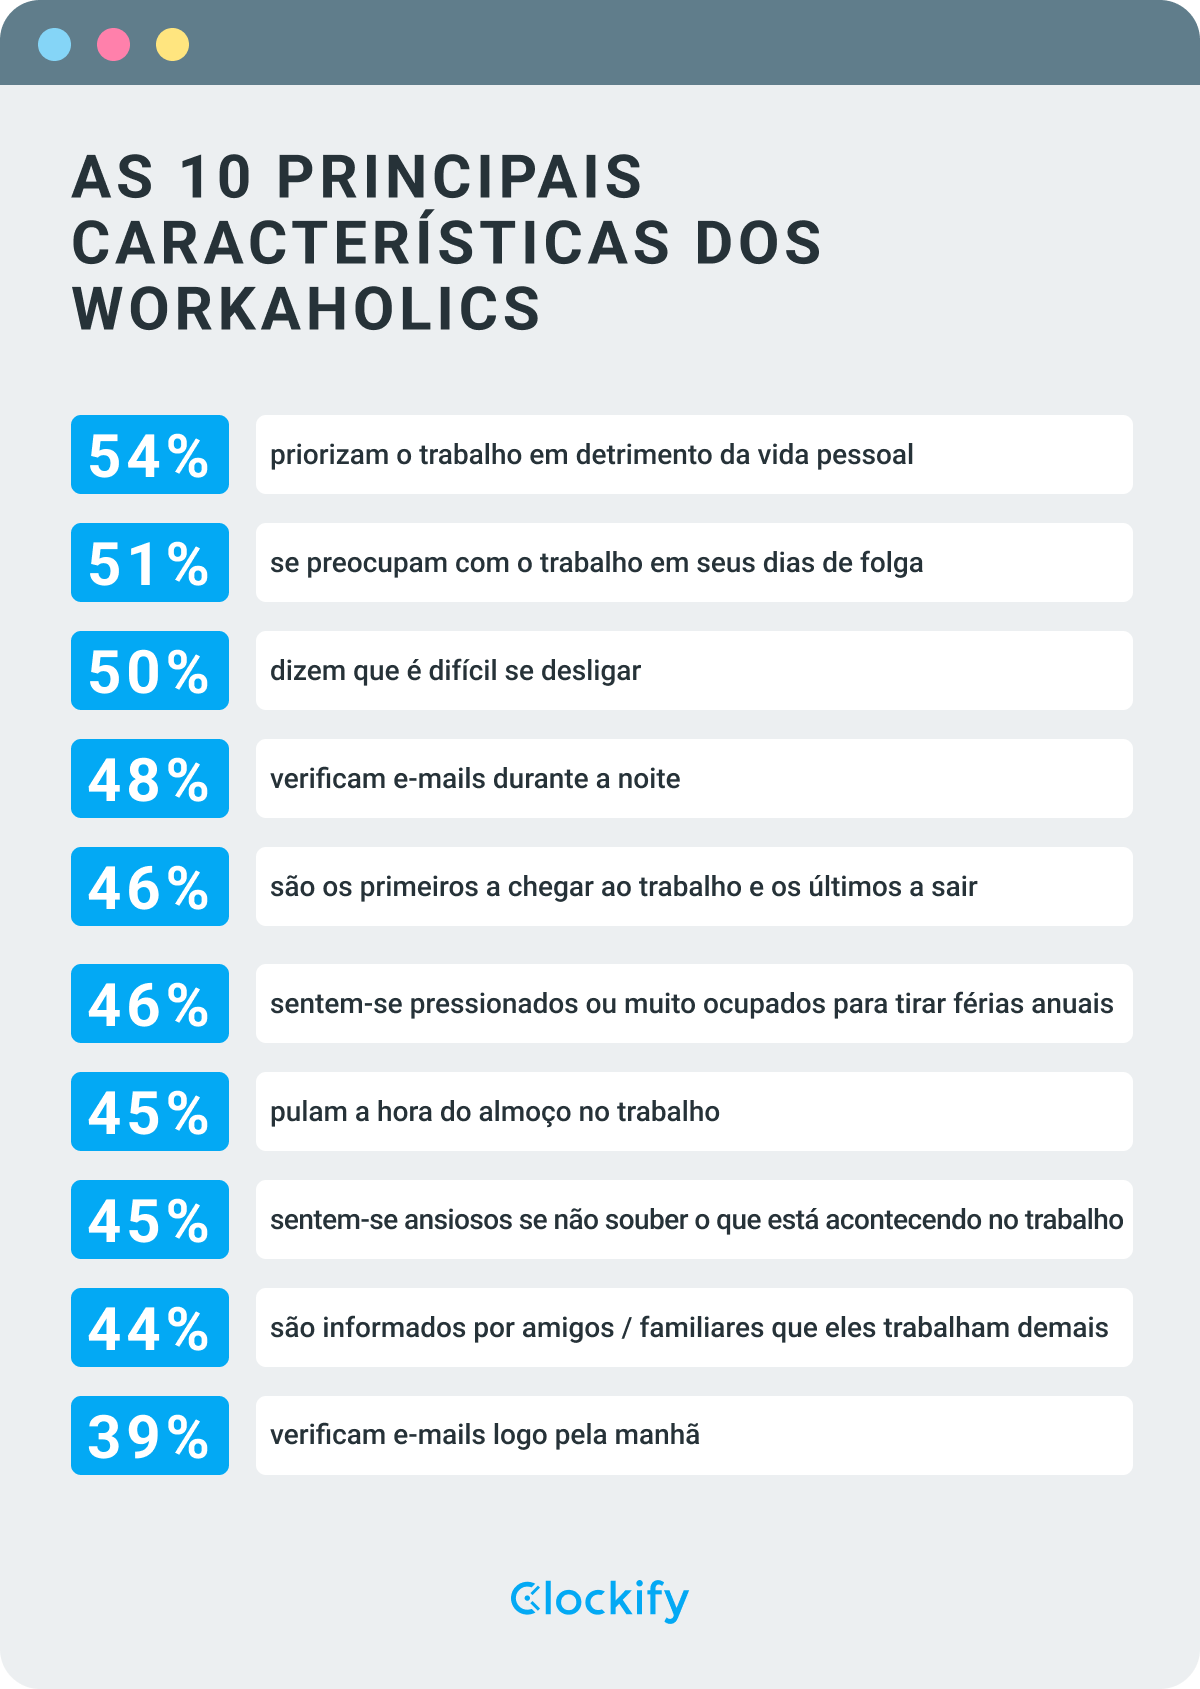 As 10 principais características dos workaholics – infográfico